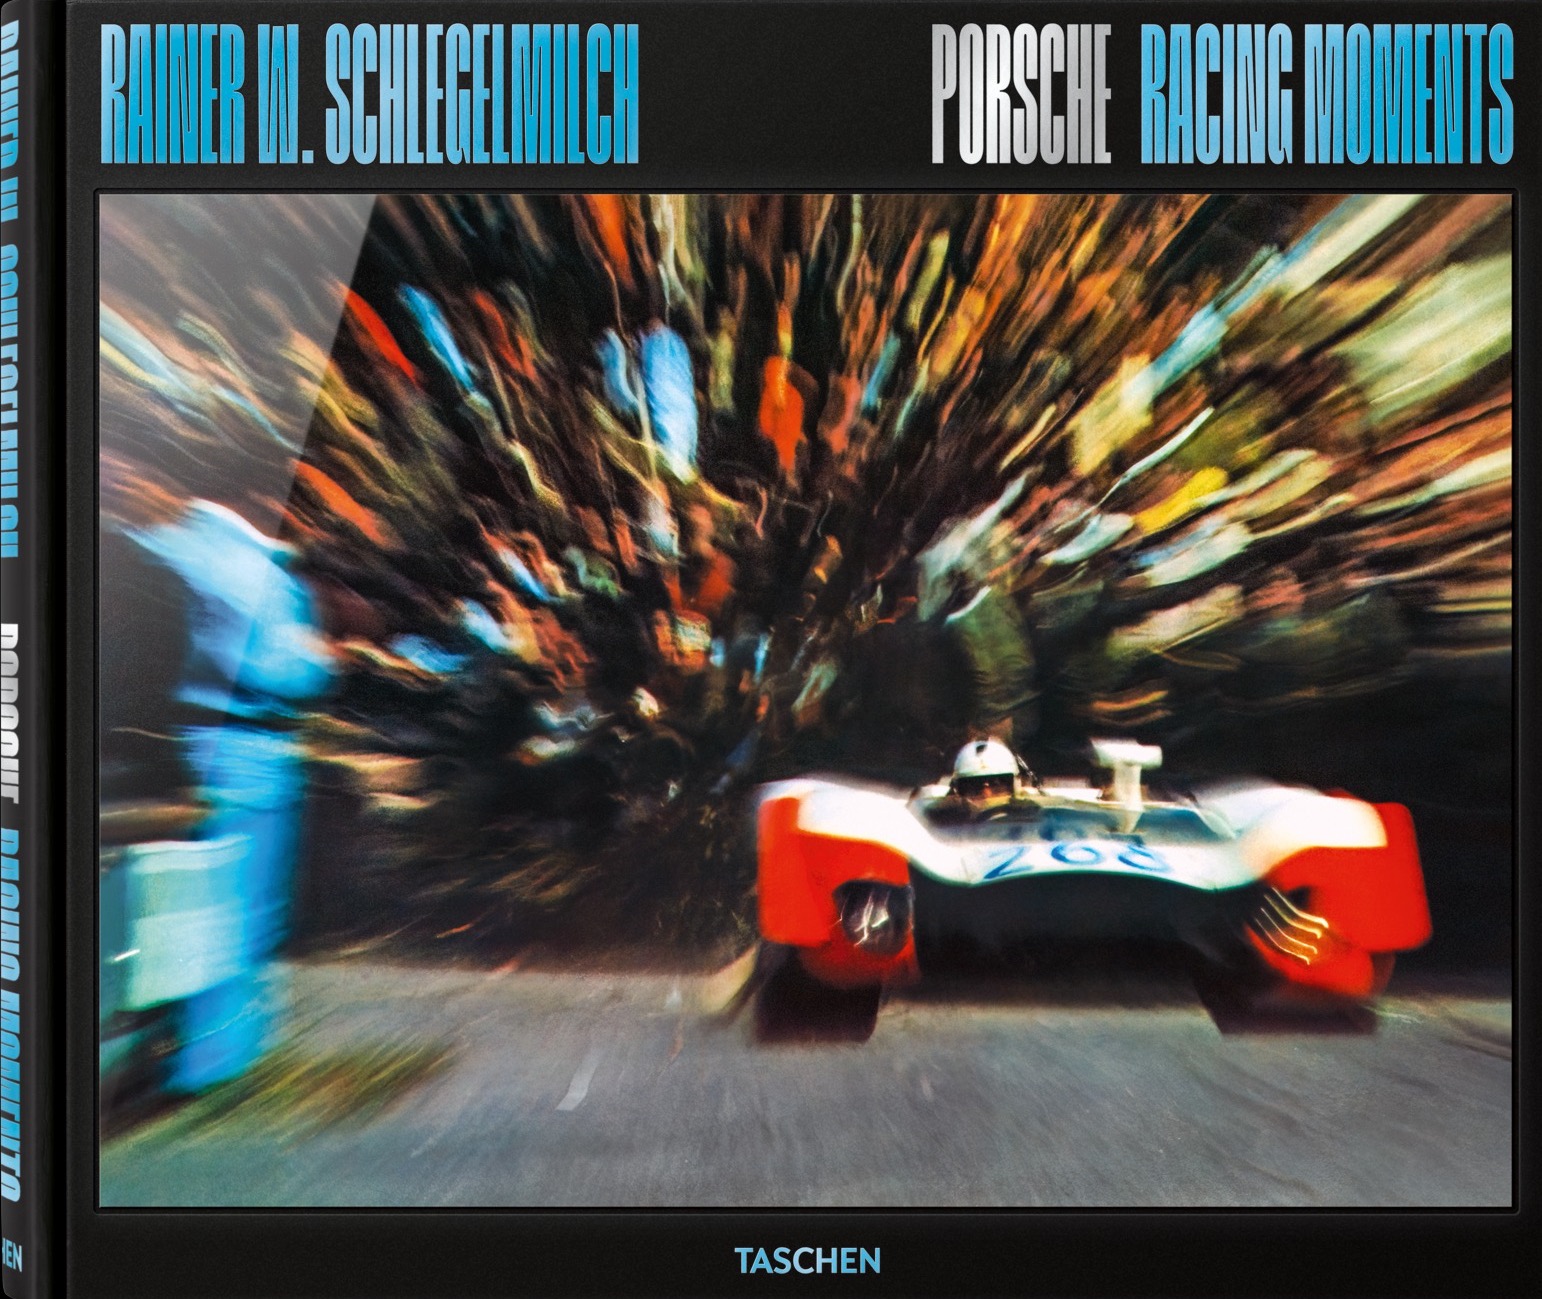 Rainer W. Schlegelmilch. Porsche Racing Moments.